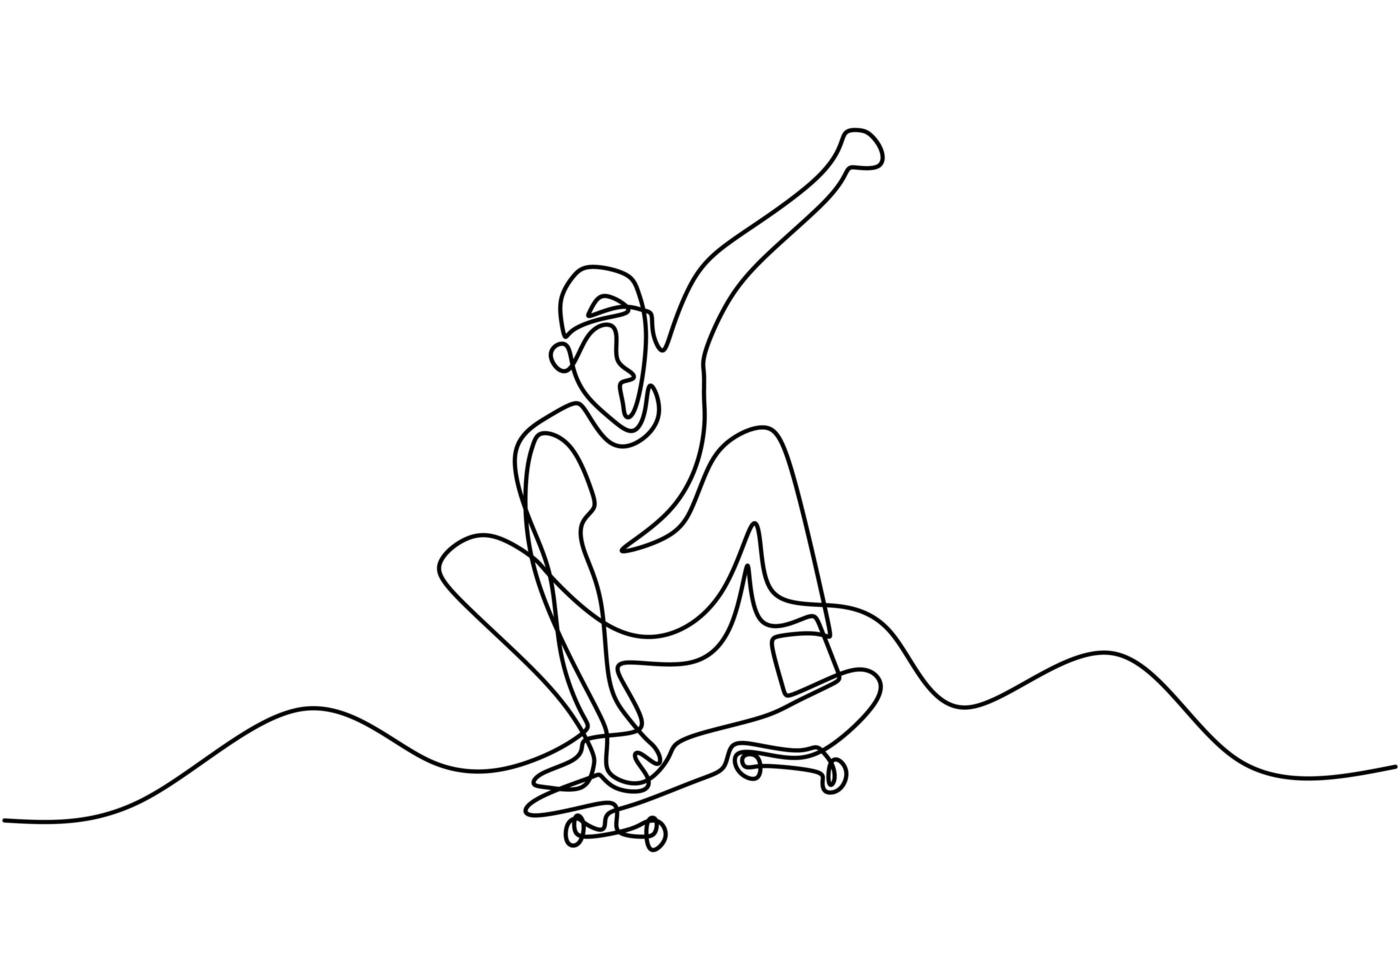 un solo dibujo de línea continua del jugador de patineta. hombre joven skater ejercicio montar patineta en la ilustración de vector de tablero de rampa. tema de ilustración de vector de deporte extremo